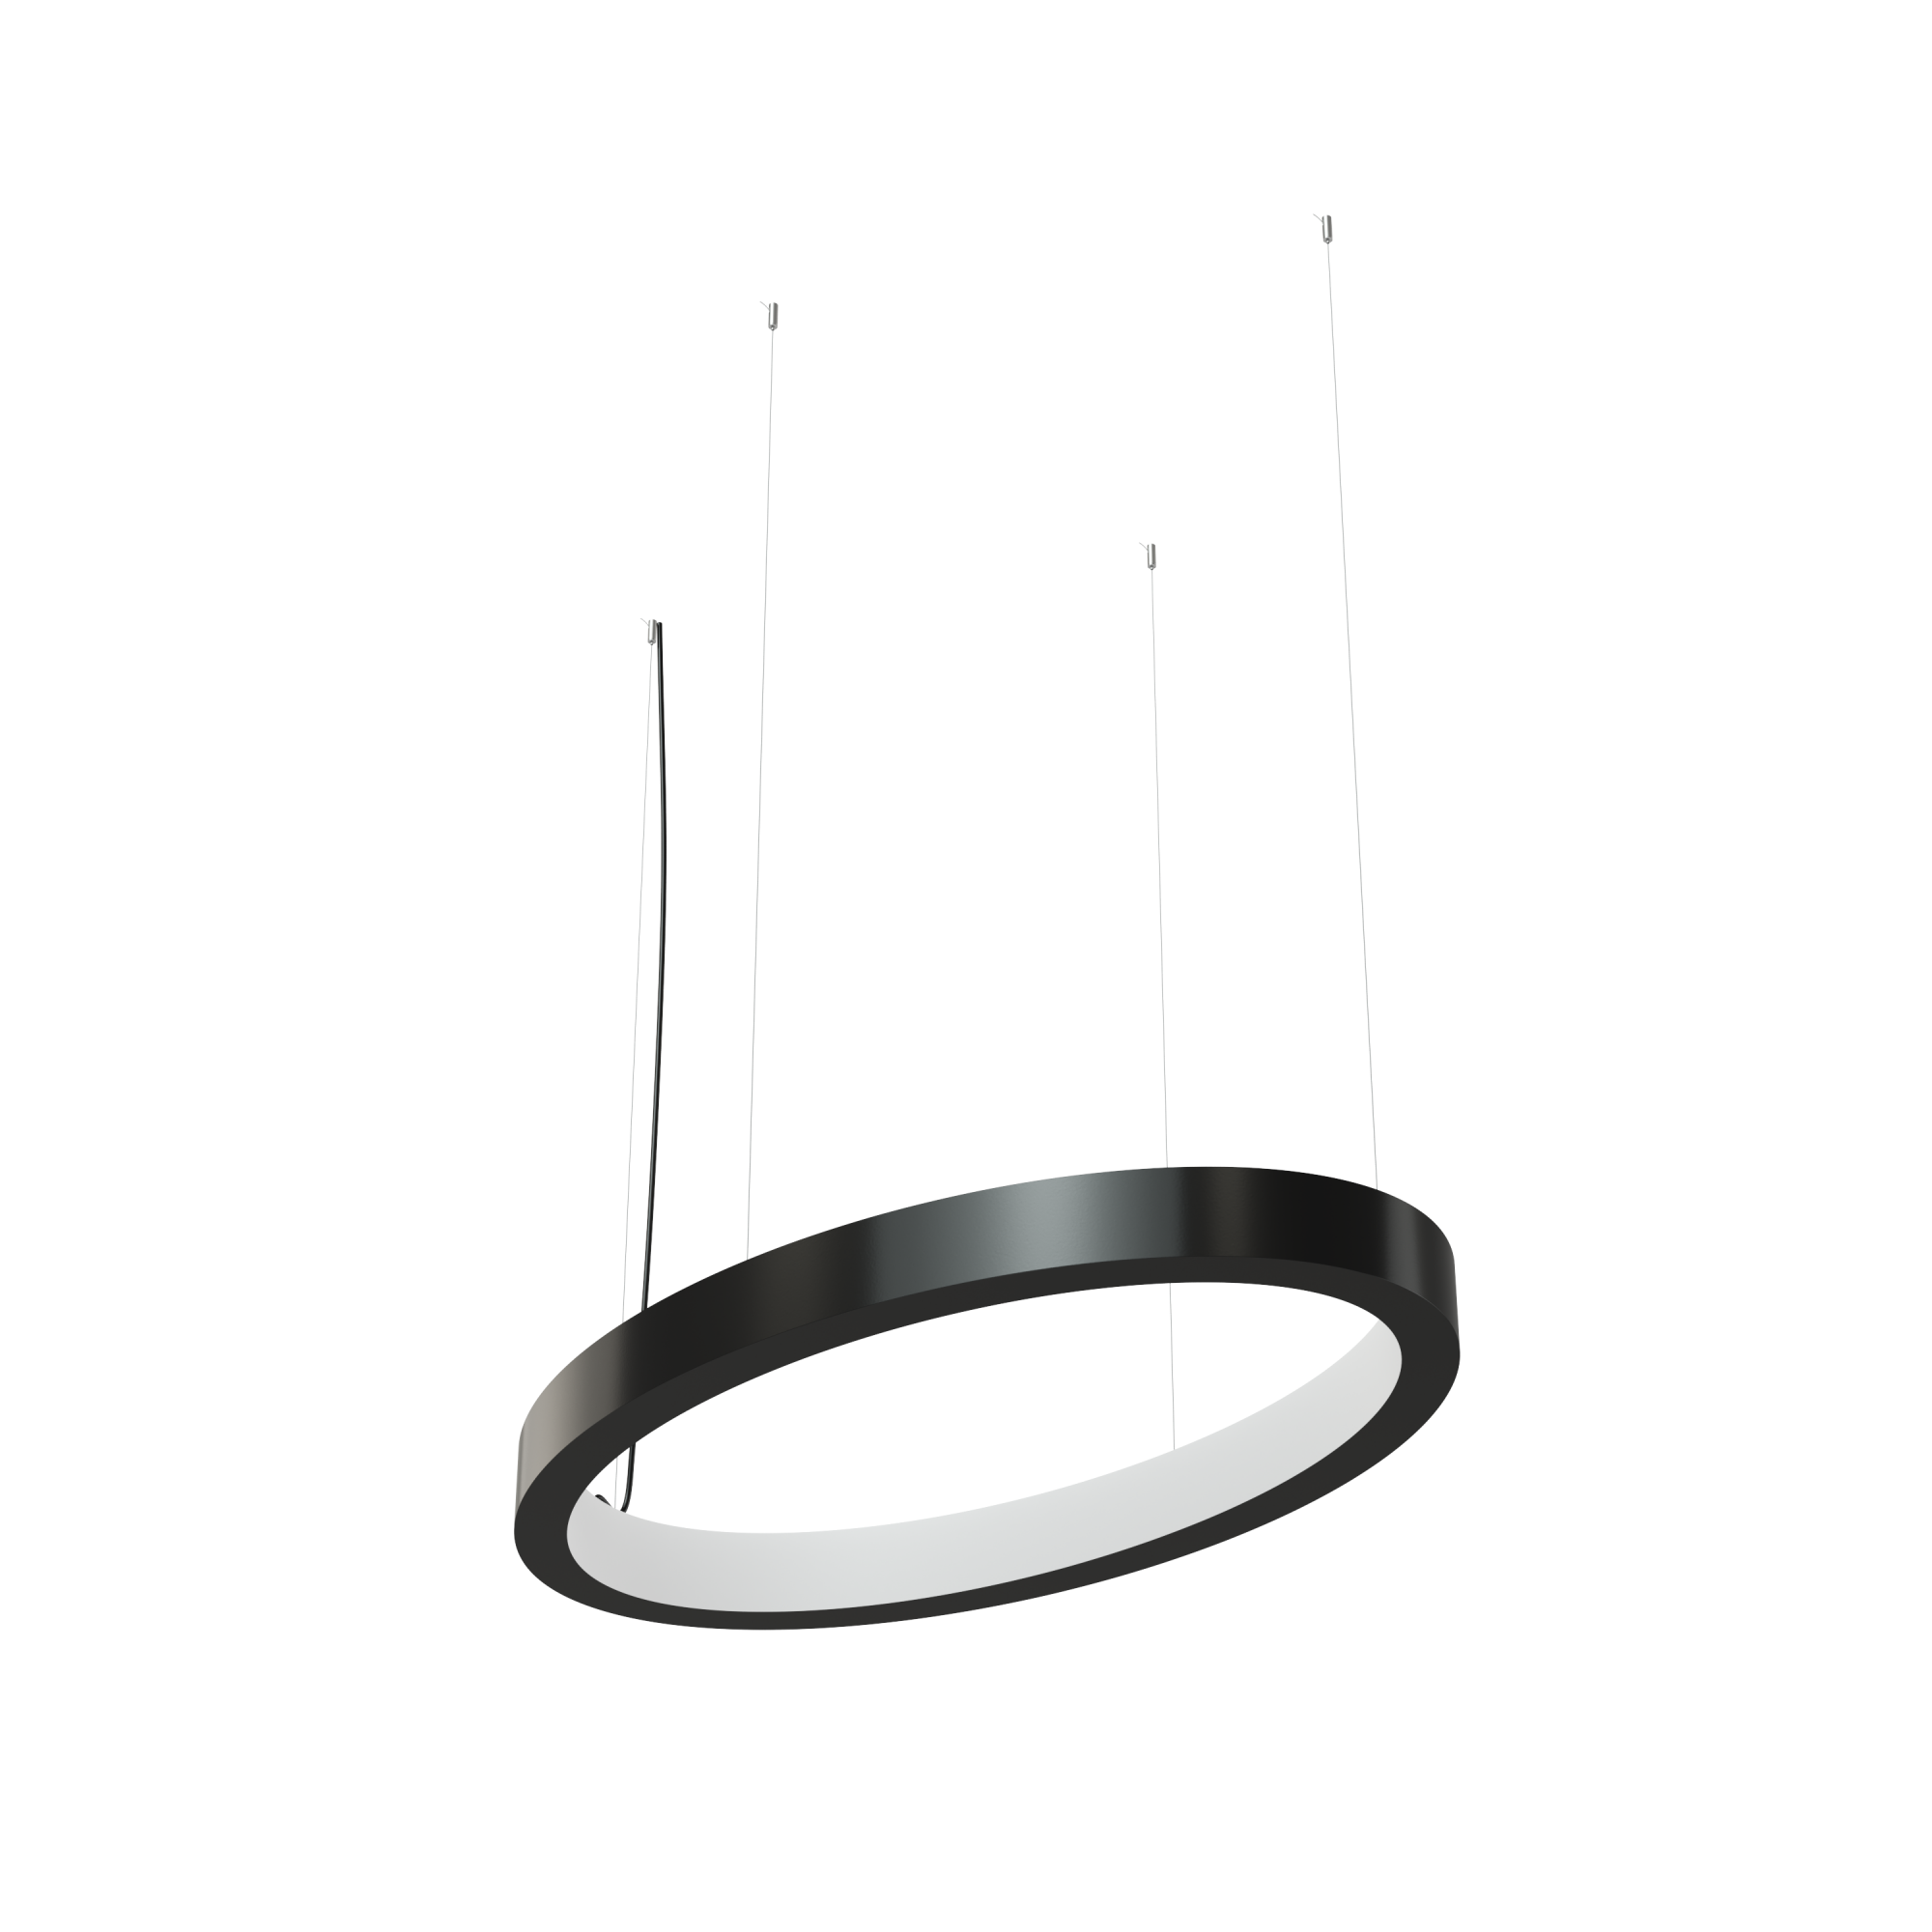 Дизайнерский светодиодный светильник Geniled Art Oval Line Inlight 800x400 h60 w60 4000К 90Ra Черный